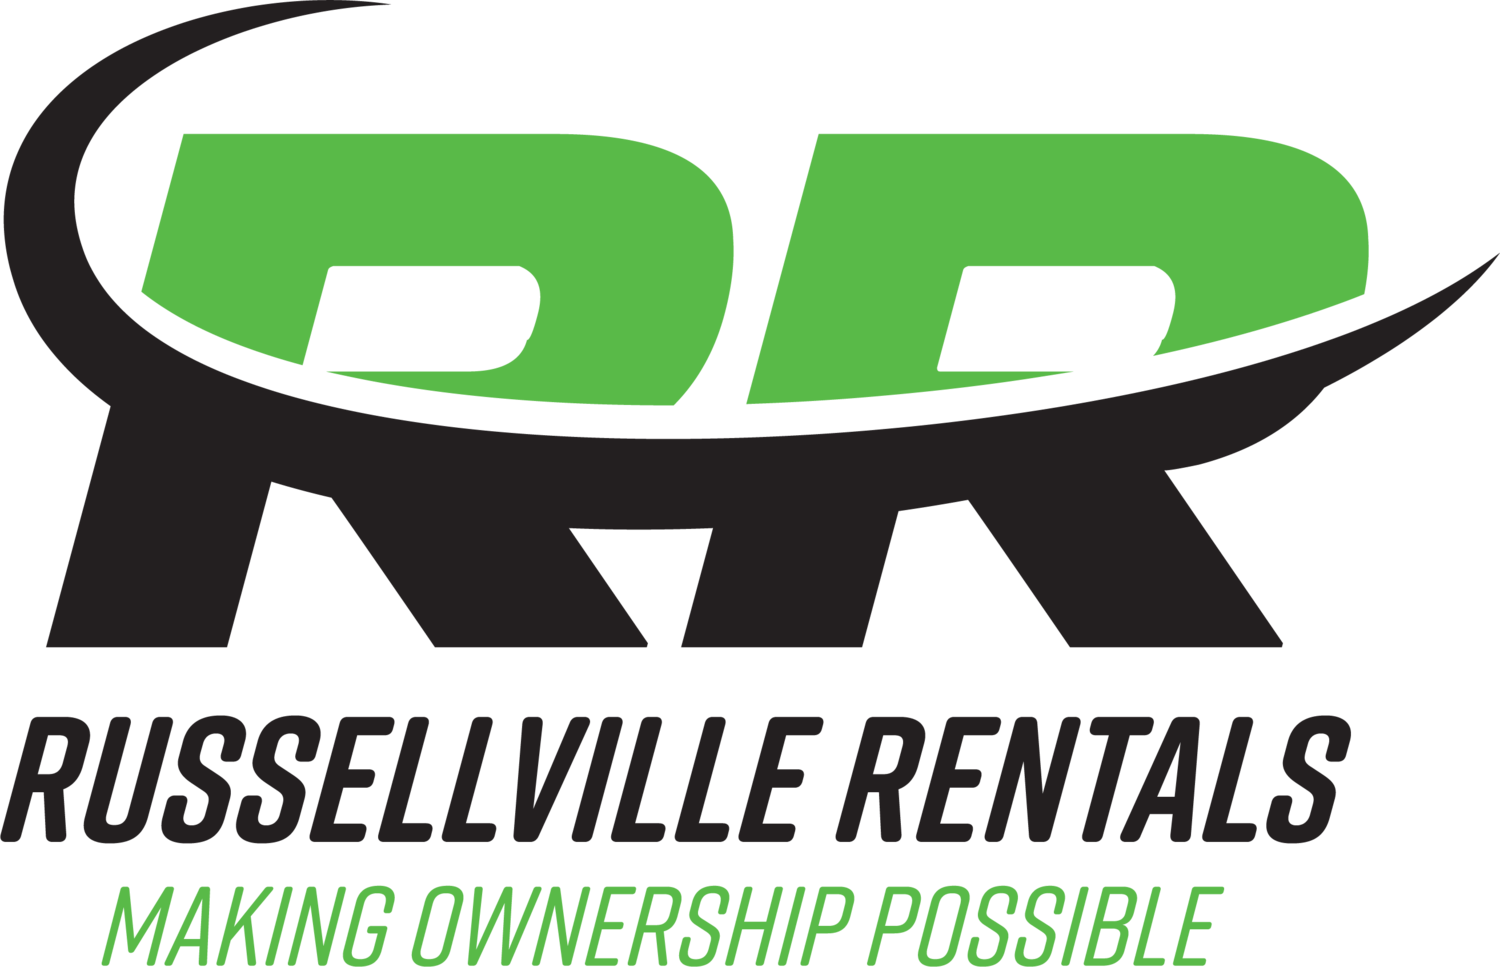 Russellville Rentals LLC